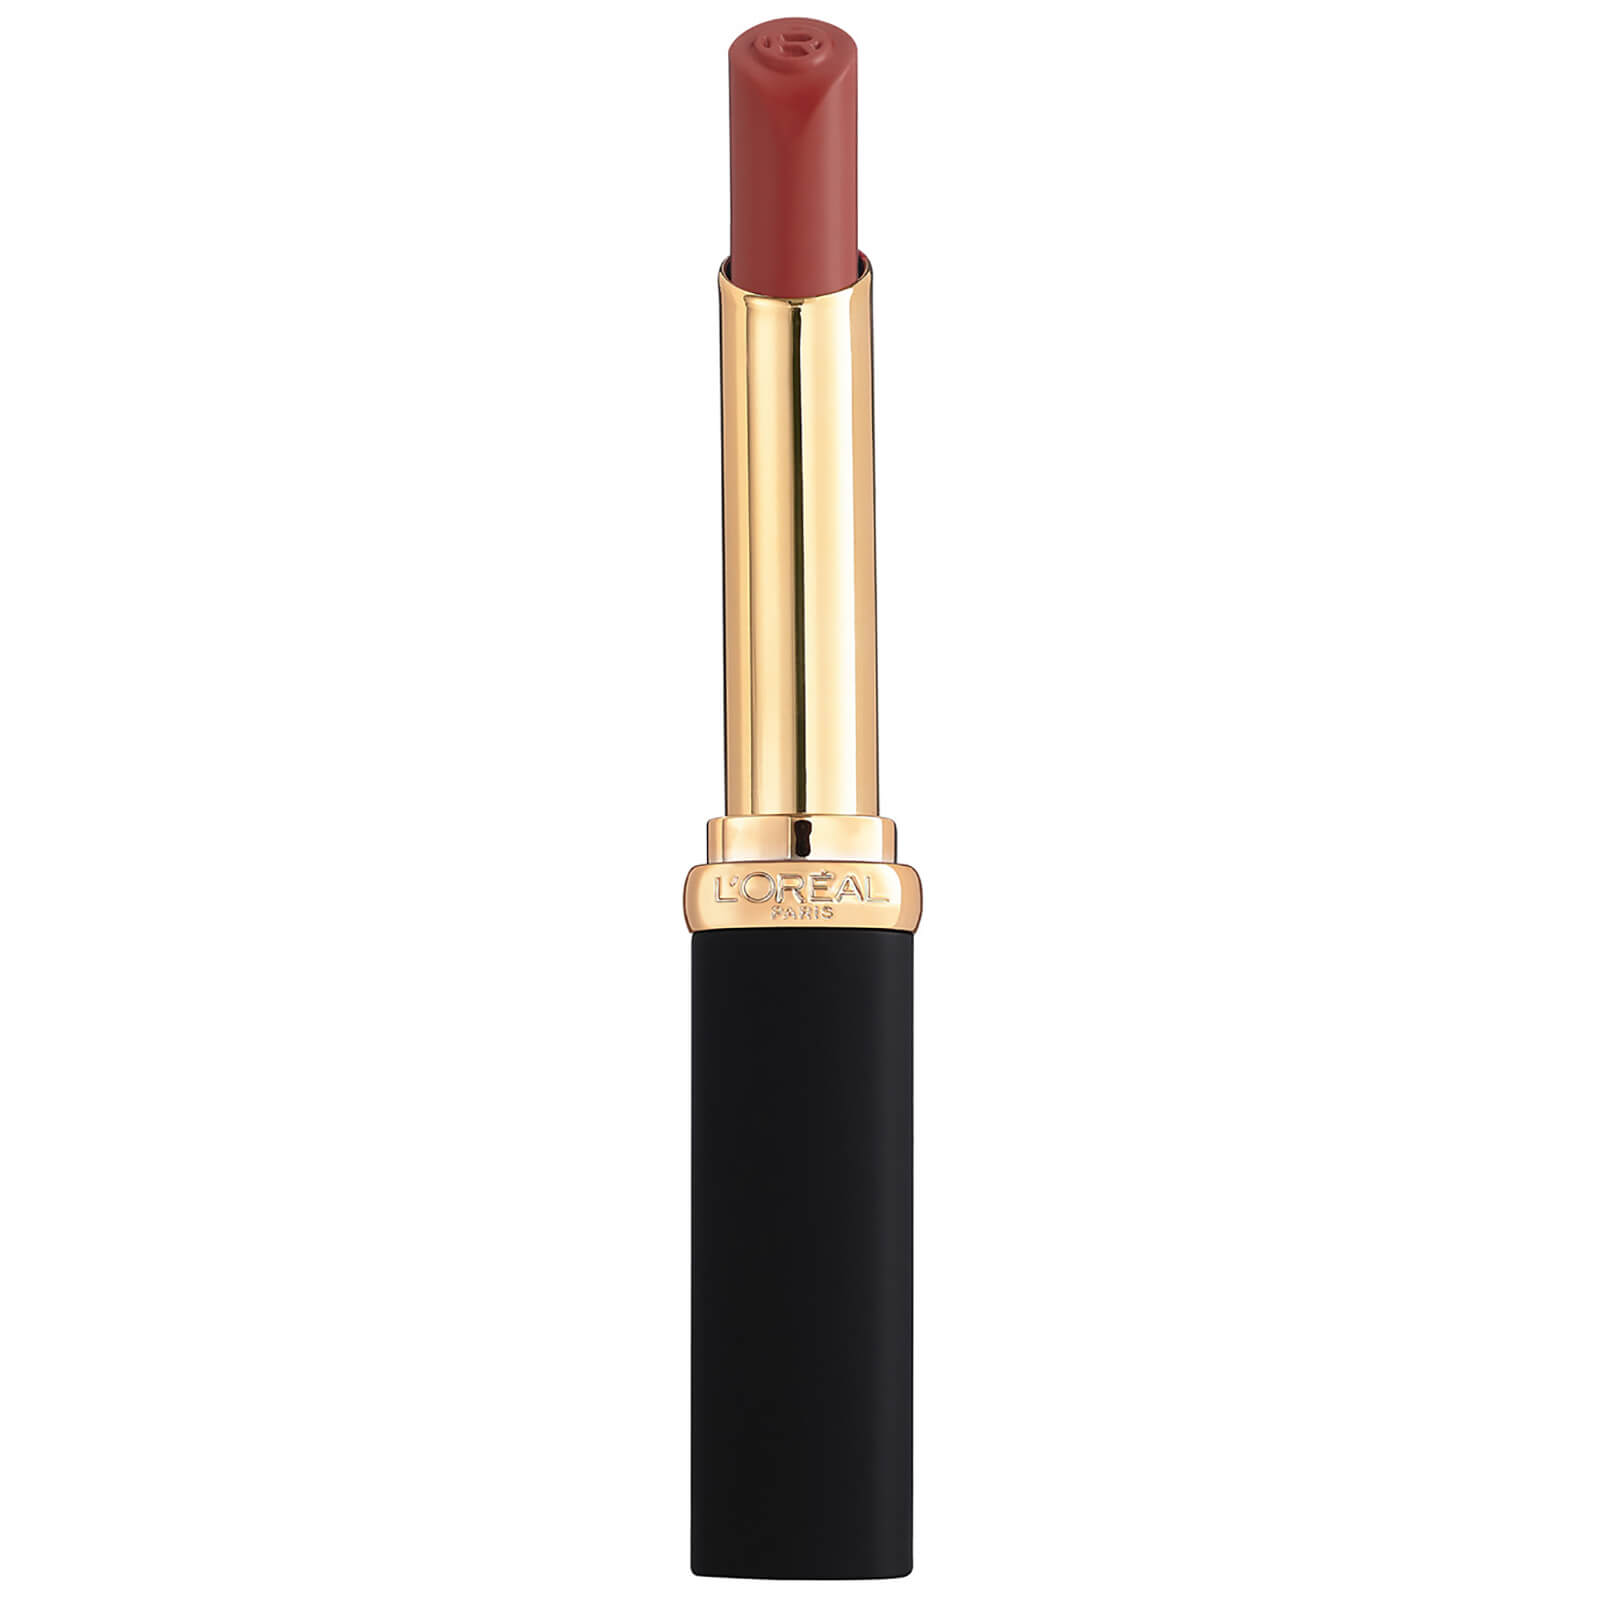 L'Oreal Paris Colour Riche Intense Volume Matte Lipstick 25g (Various Shades) - Wood Nonchalant